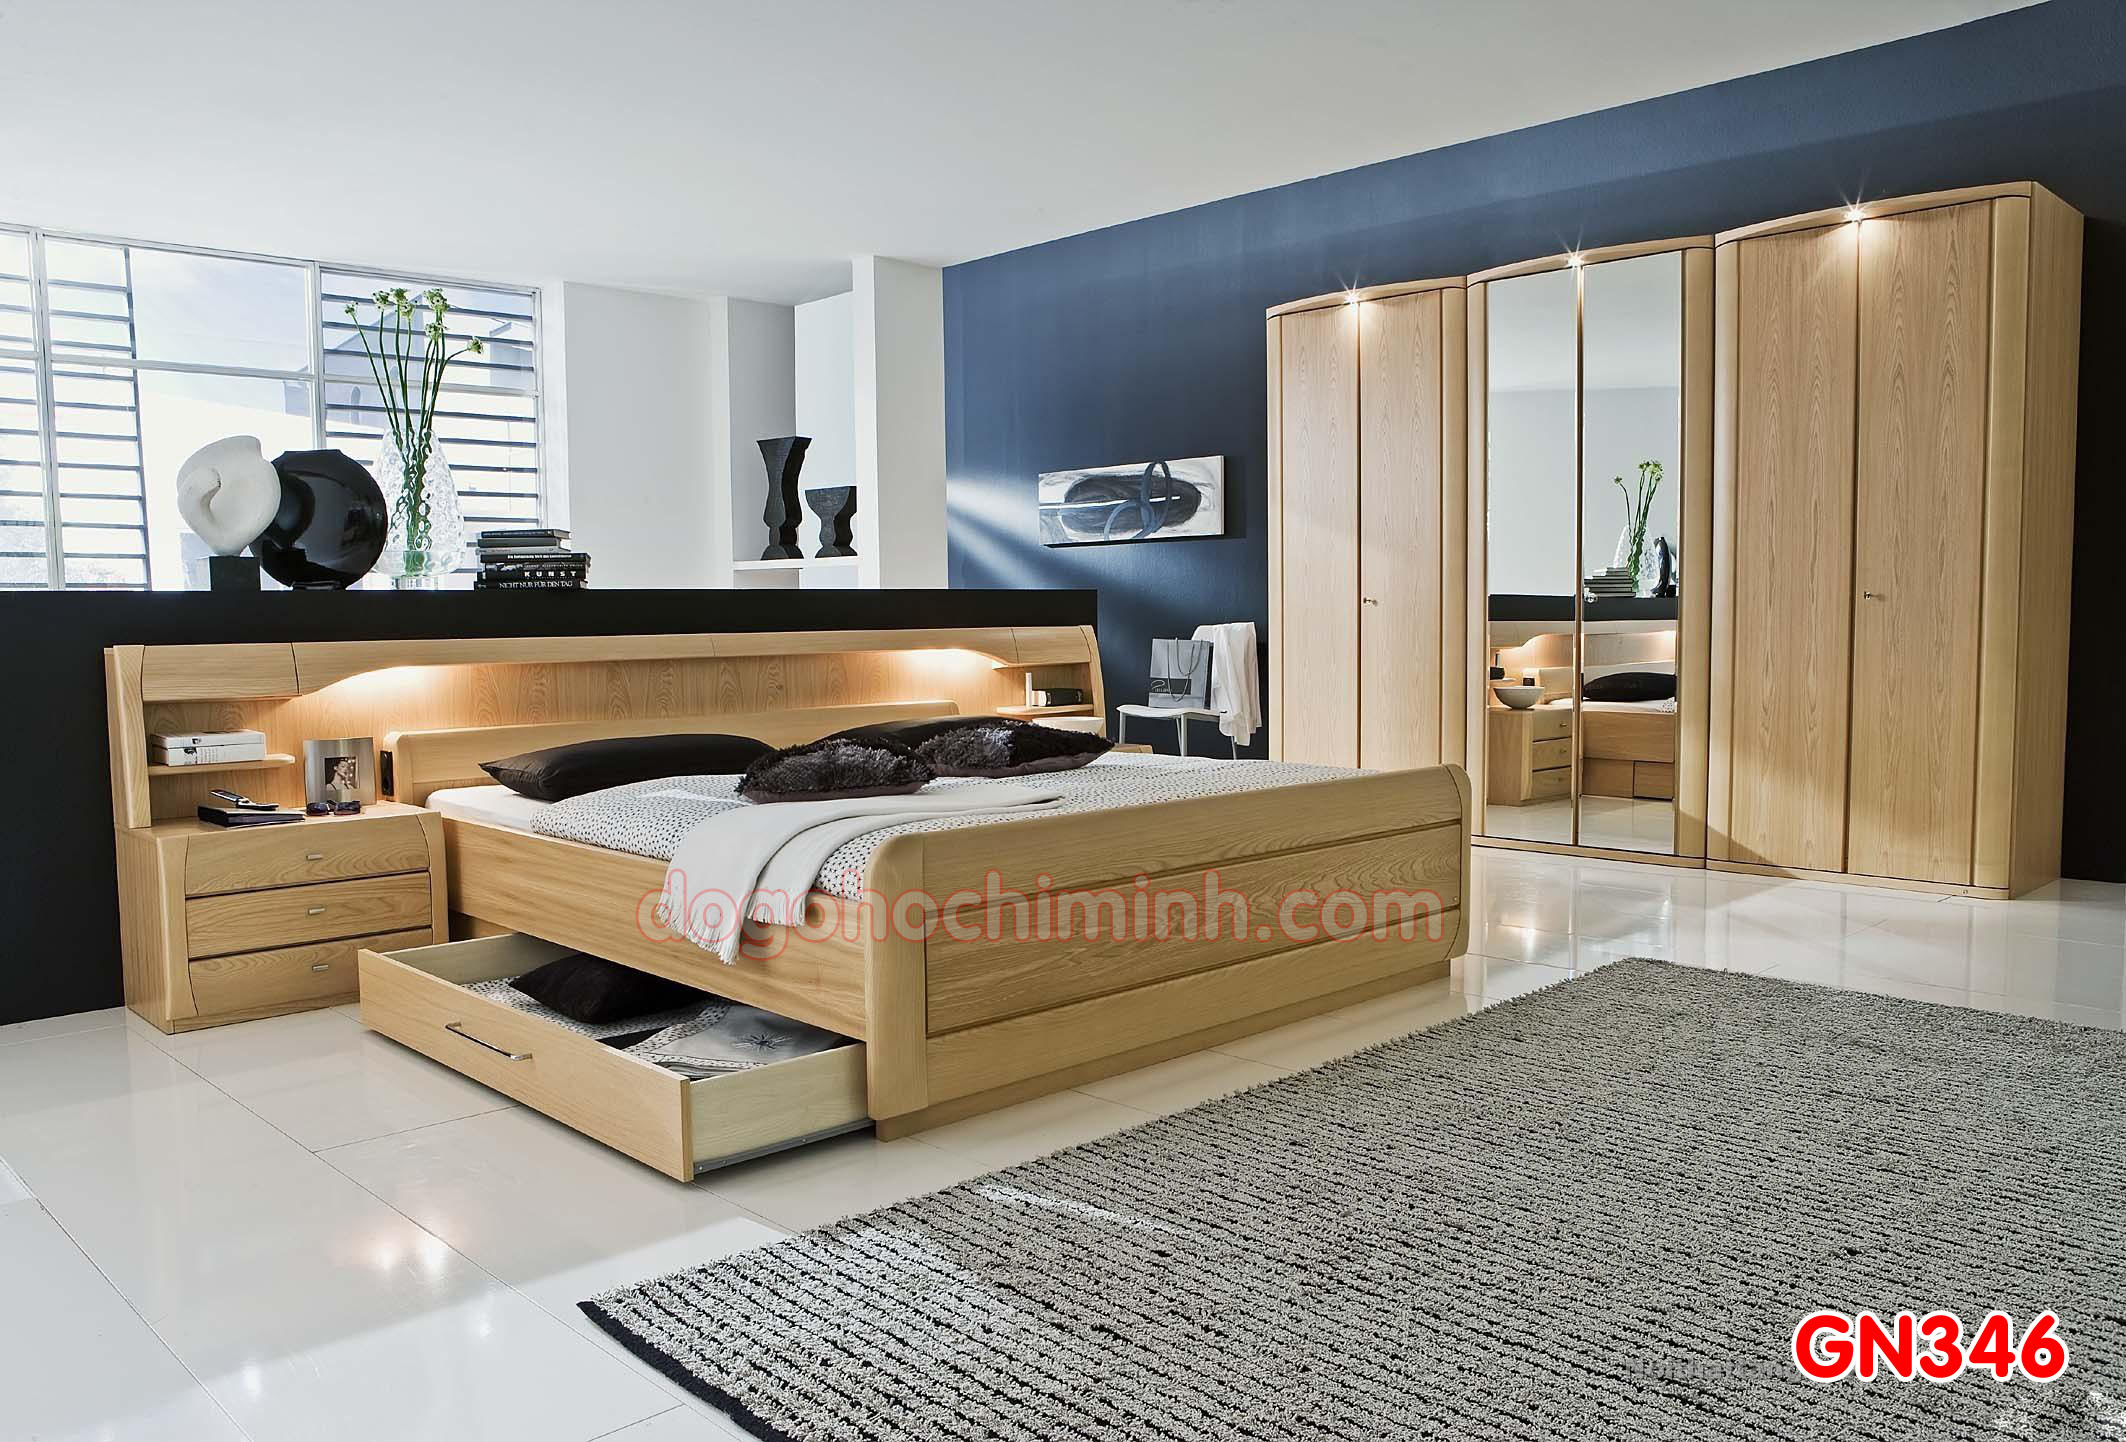 Giường ngủ gỗ đẹp cao cấp giá rẻ GN346